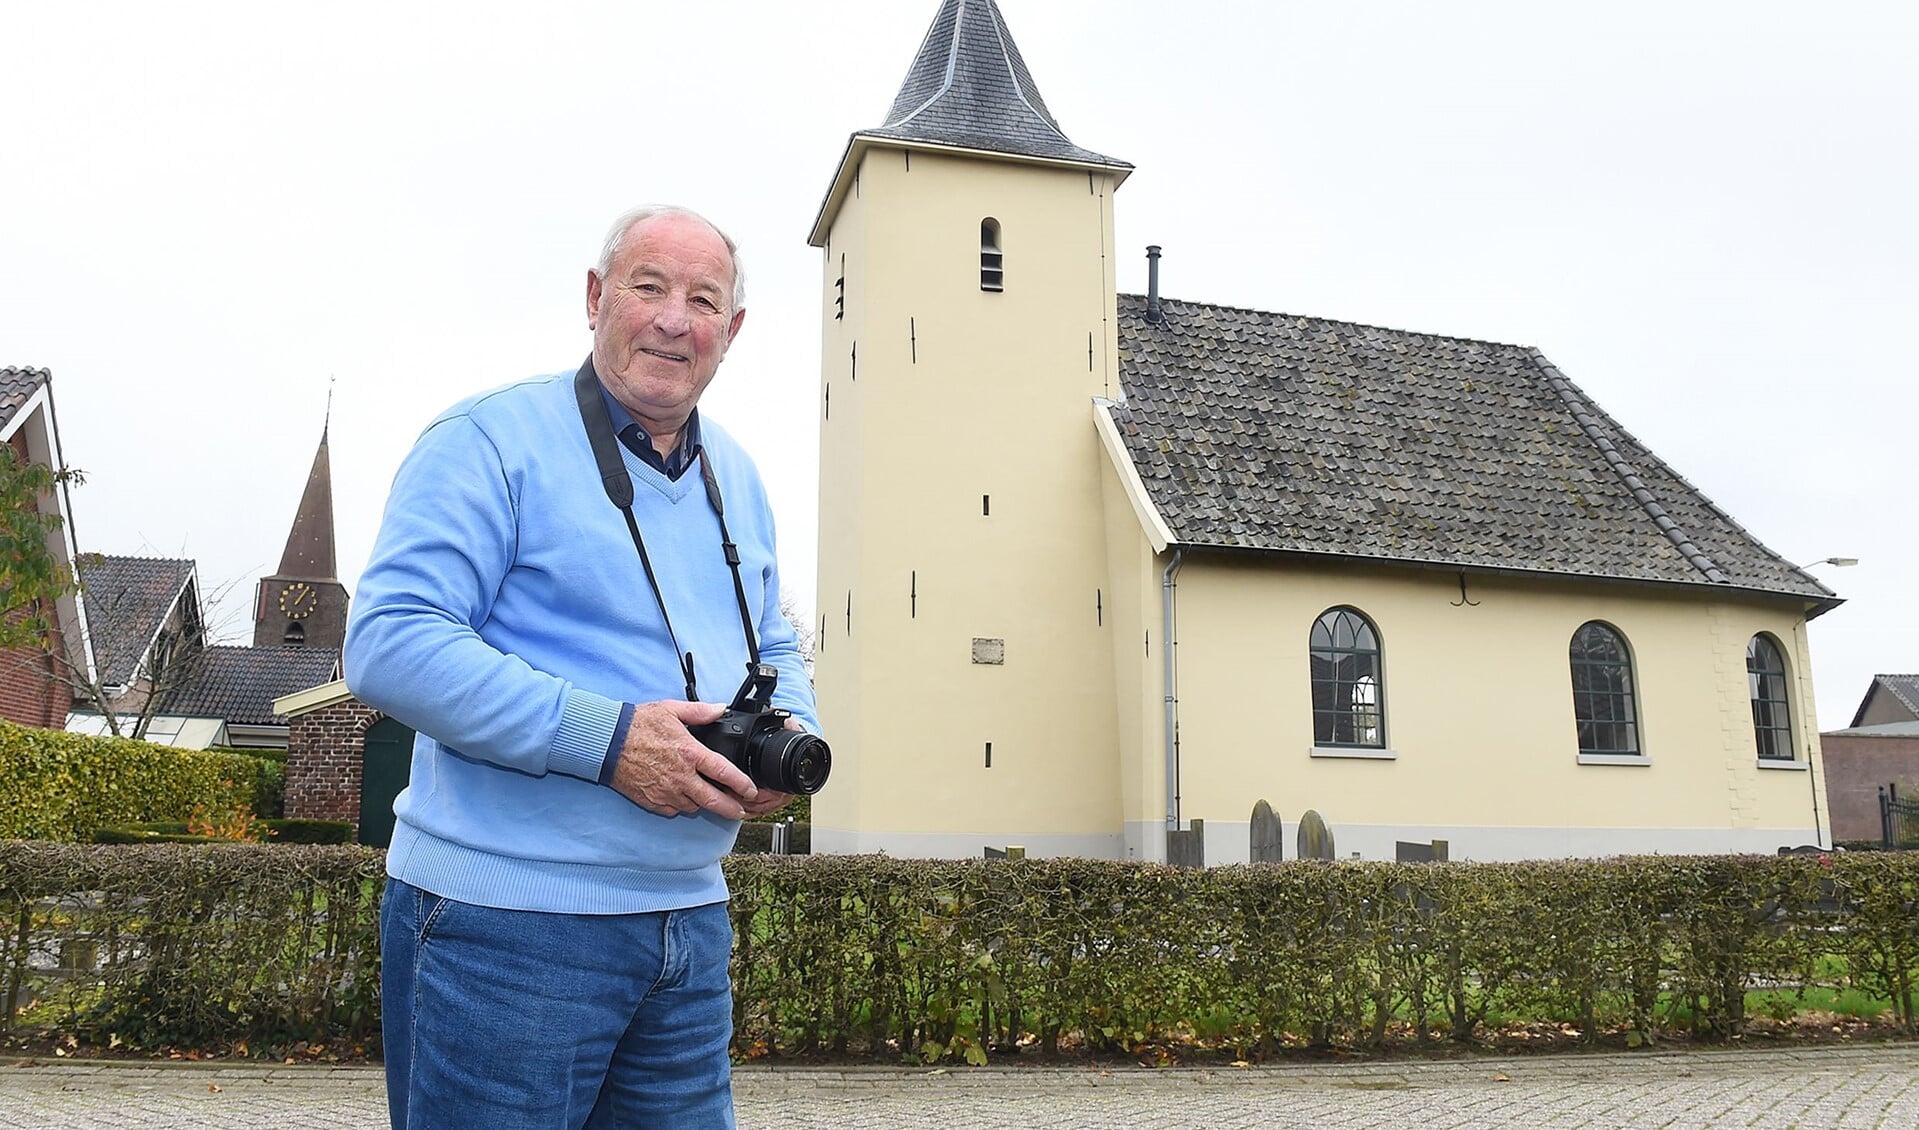 Ad van Aalst van de fotowerkgroep van de OVGG op pad in Megchelen bij de Nederlands Hervormde kerk. Foto: Roel Kleinpenning